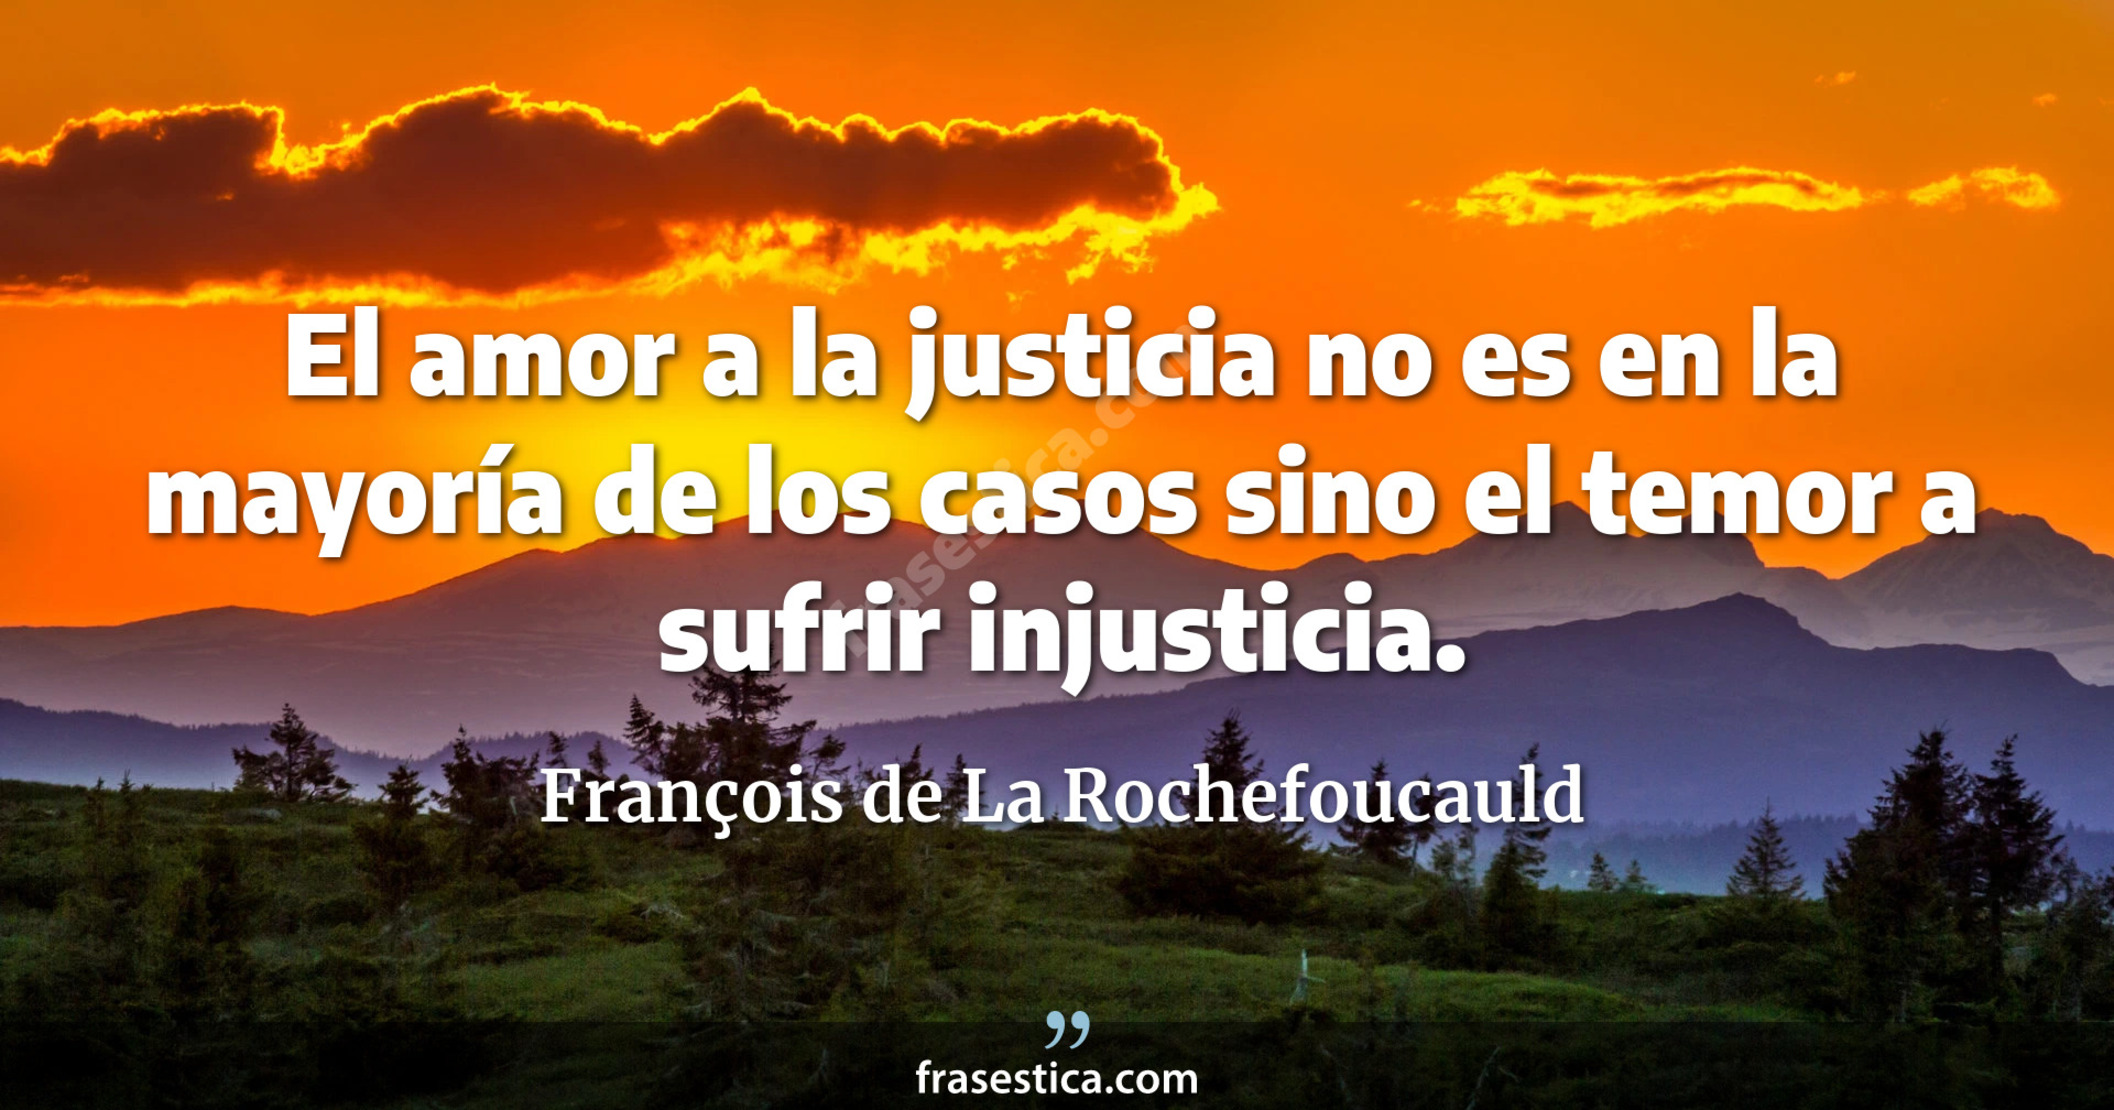 El amor a la justicia no es en la mayoría de los casos sino el temor a sufrir injusticia. - François de La Rochefoucauld